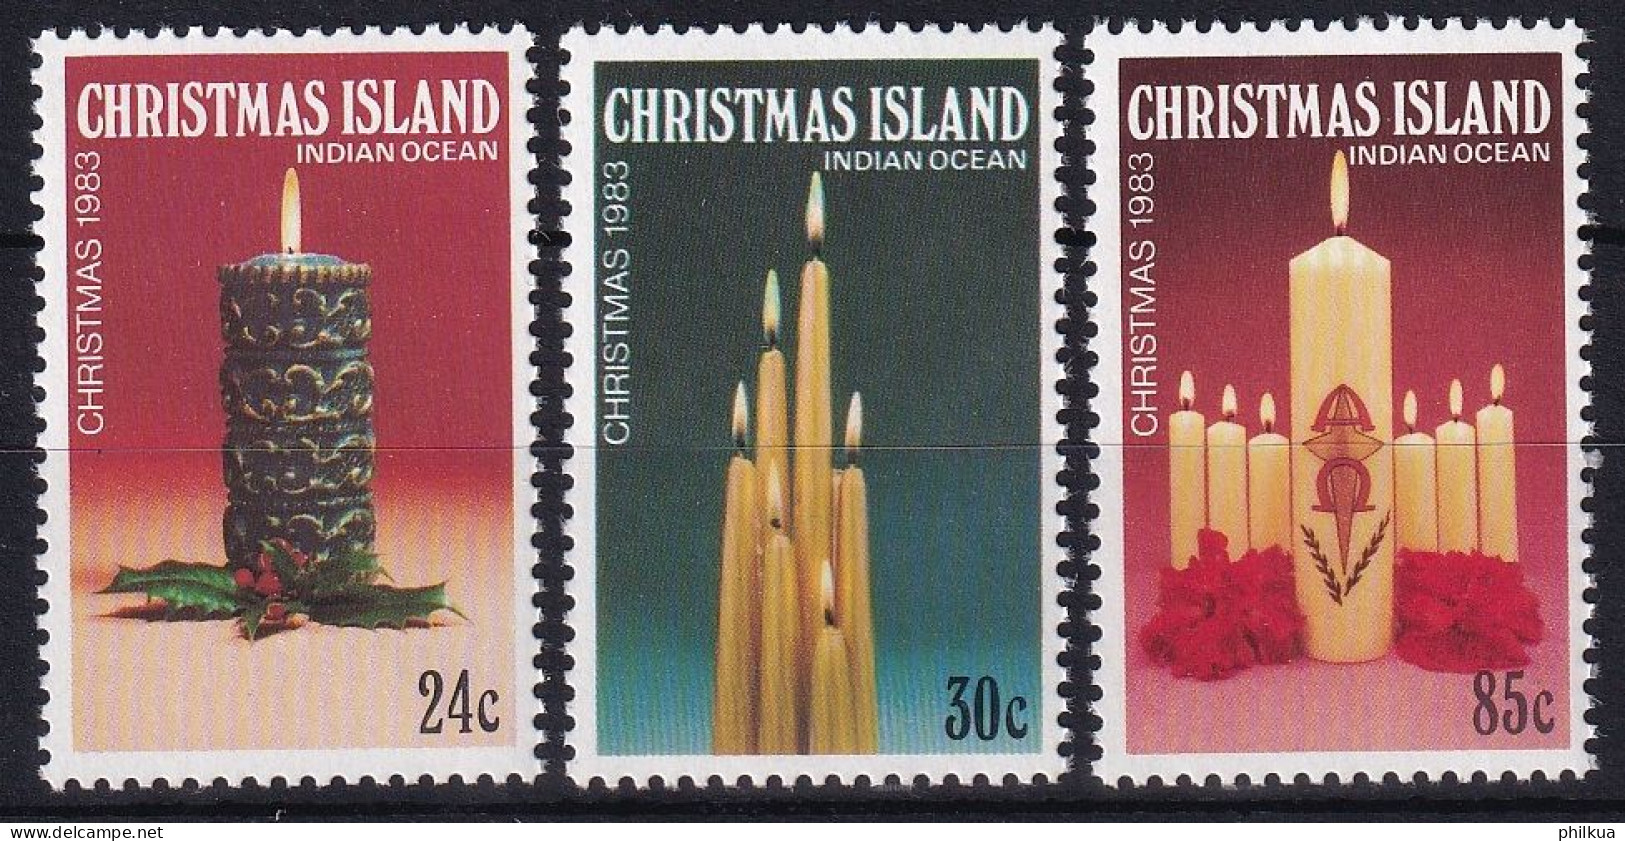 MiNr. 180 - 182 Weihnachtsinsel       1983, 31. Okt. Weihnachten - Postfrisch/**/MNH - Christmas Island